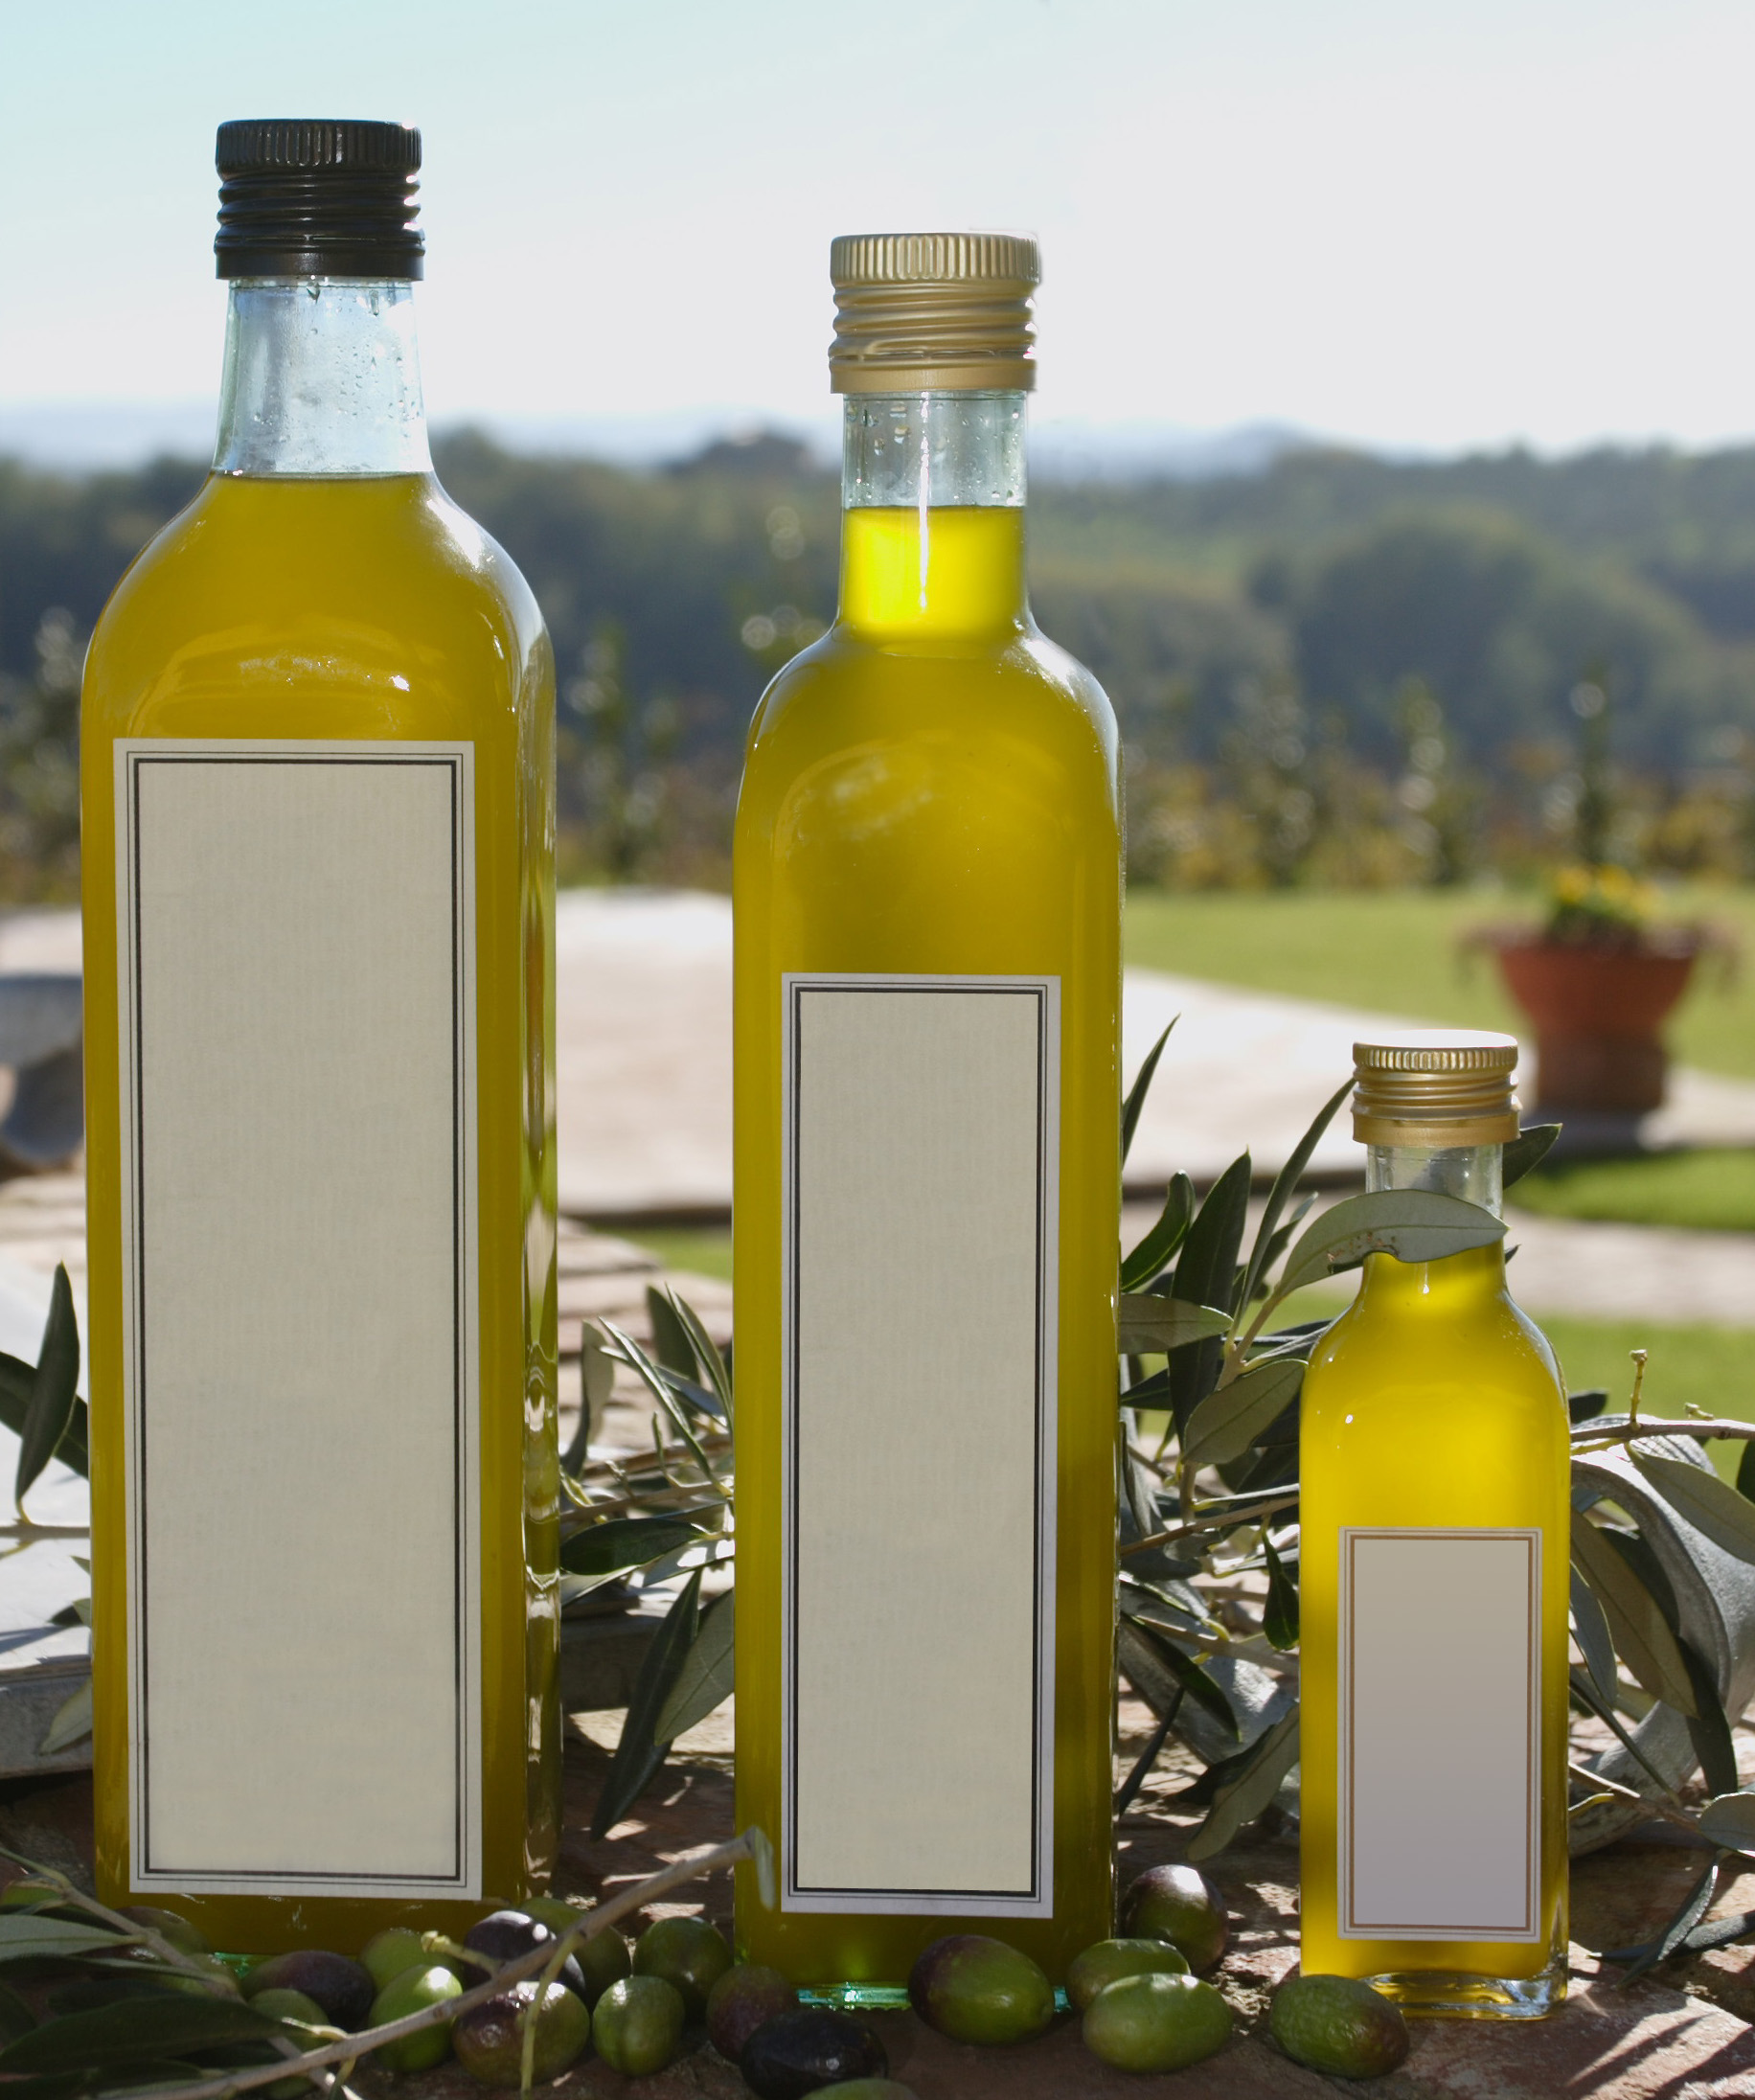 El aceite de oliva es uno de los elementos más característicos de la dieta mediterránea. Imagen: homyox. Fuente: Stock.xchng.